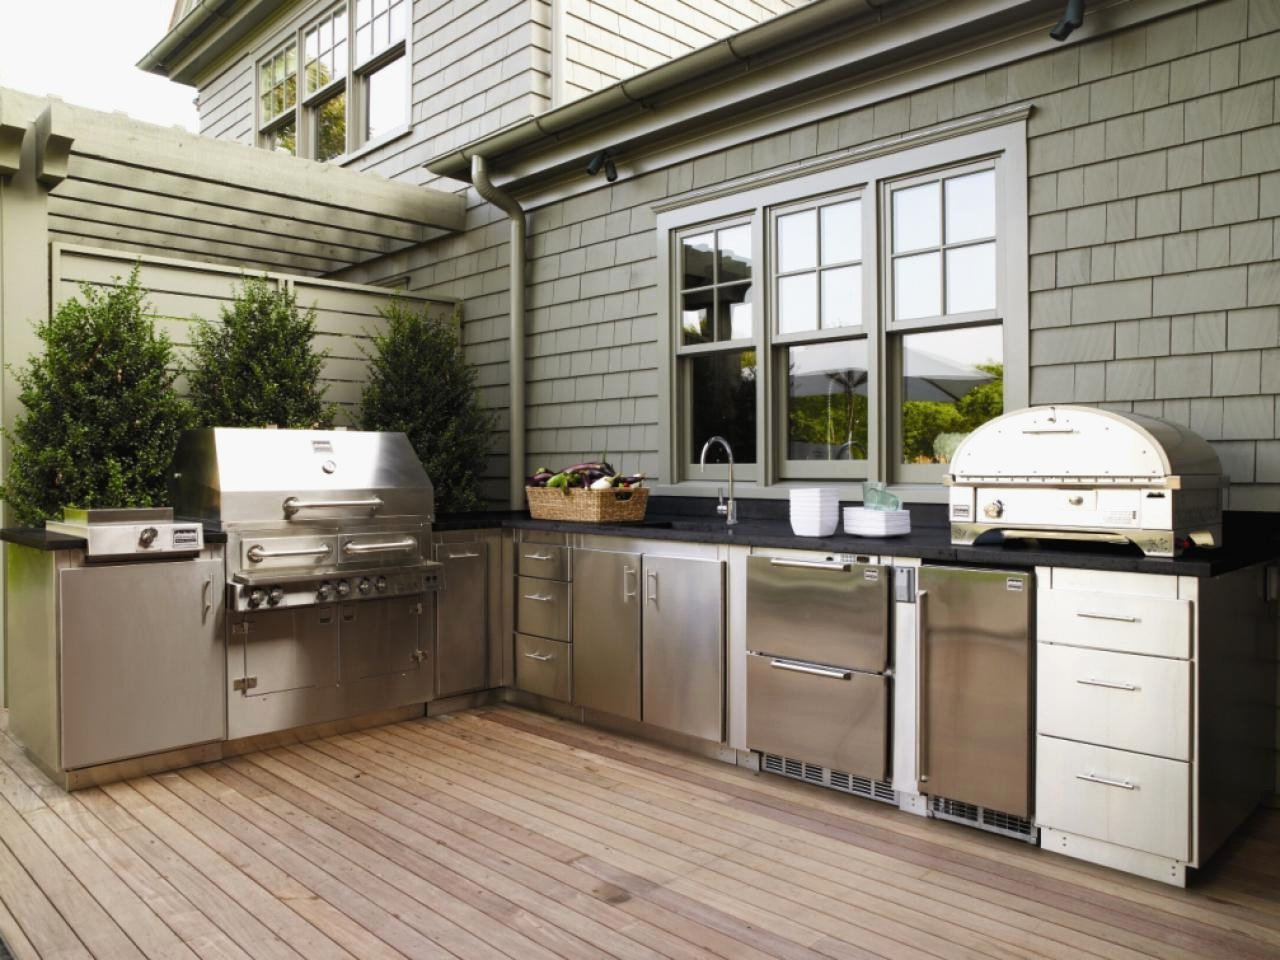 Build Your Own Outdoor Kitchen
 20 Best Ideas Build Your Own Outdoor Kitchens Home